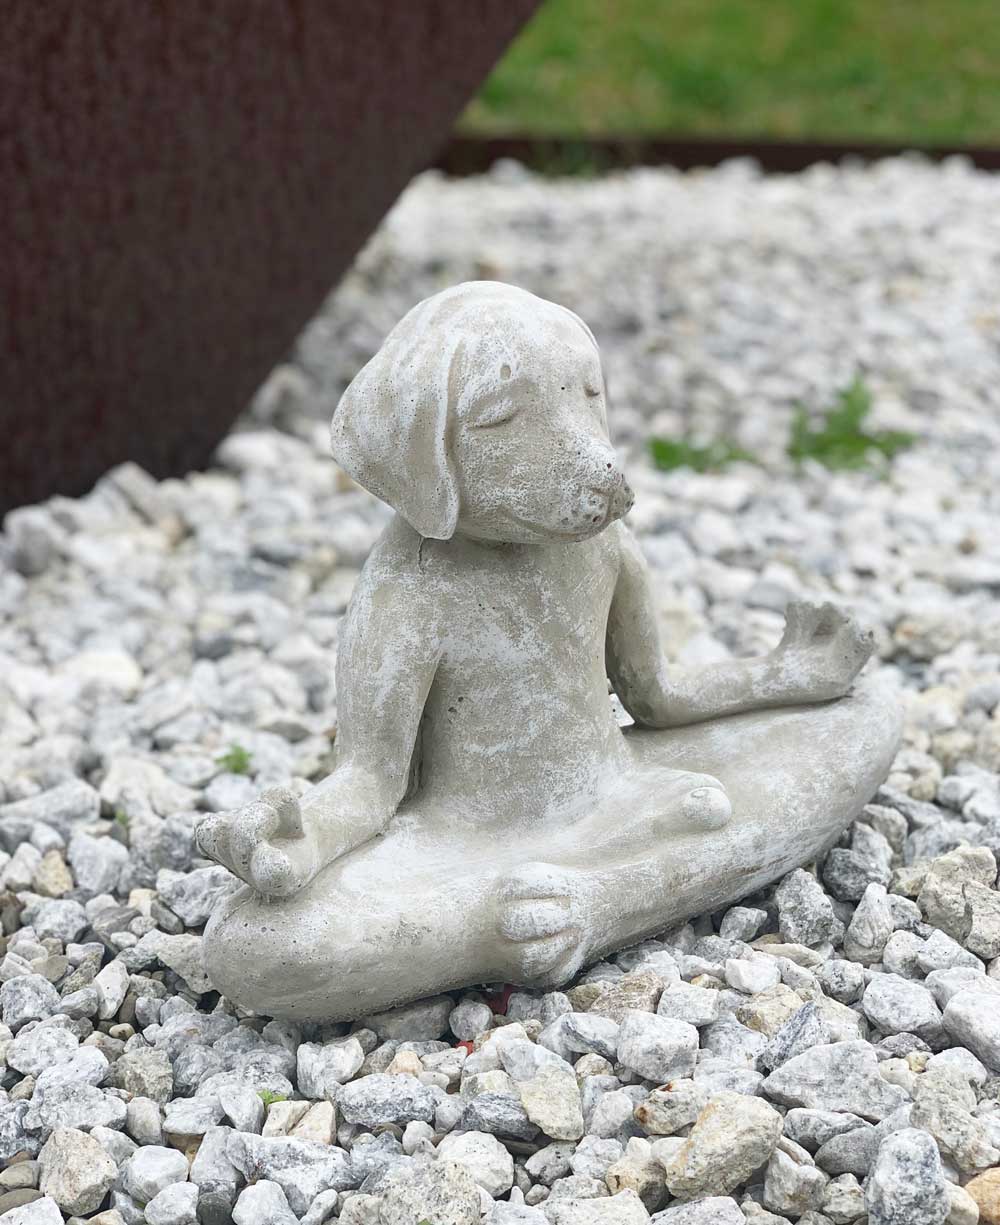 USA Made Cast Stone Meditating Zen Dog Garden Statue - Sculptures & Statues